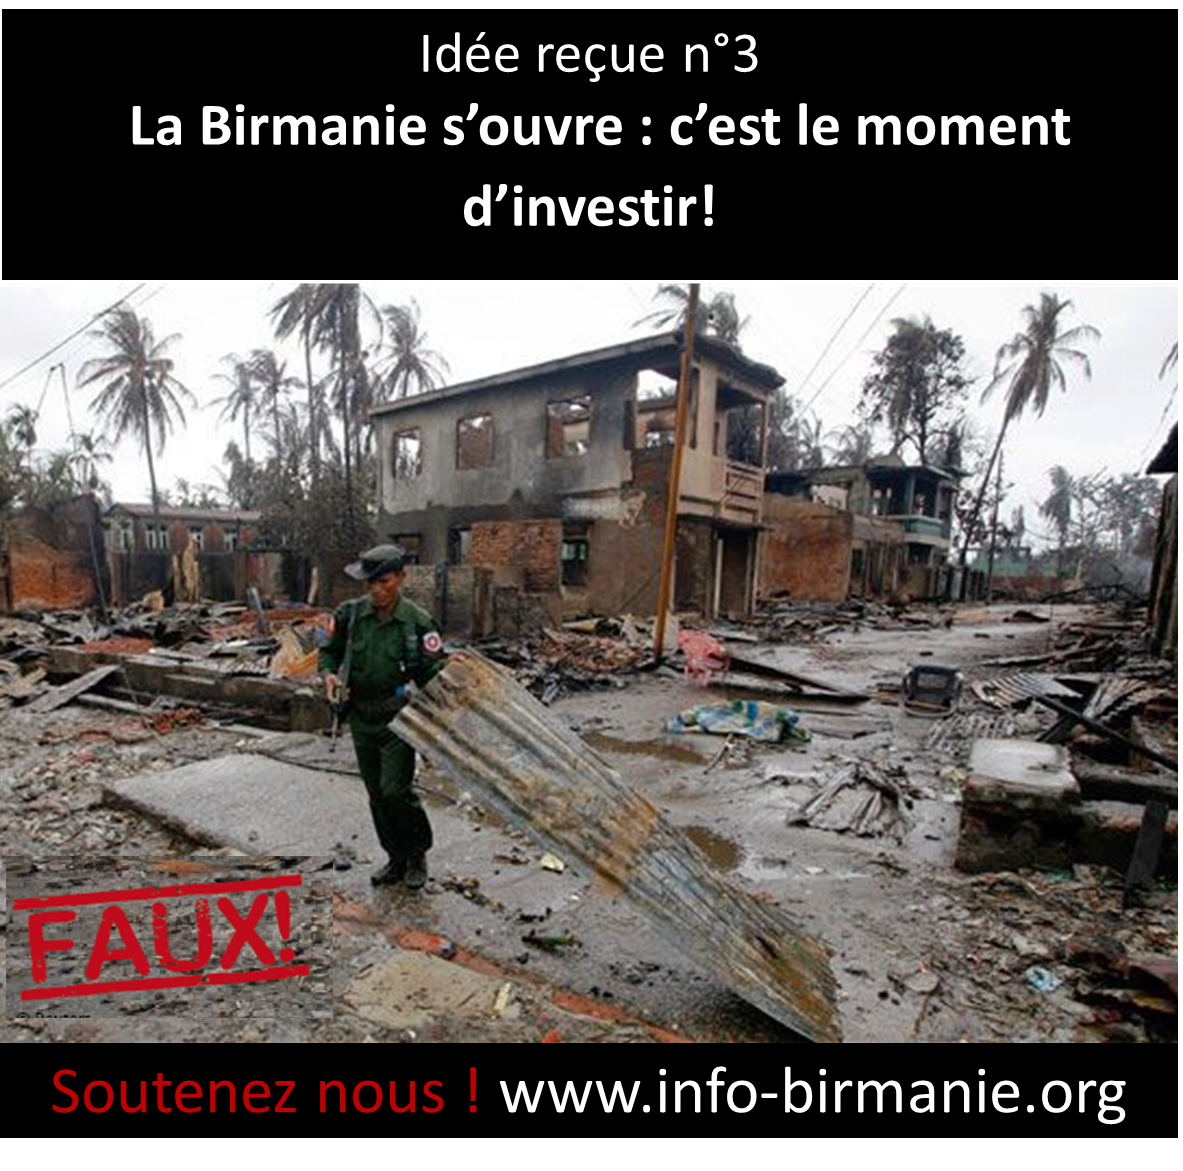 idée reçue n°3 : La Birmanie s’ouvre c’est le moment d’investir!